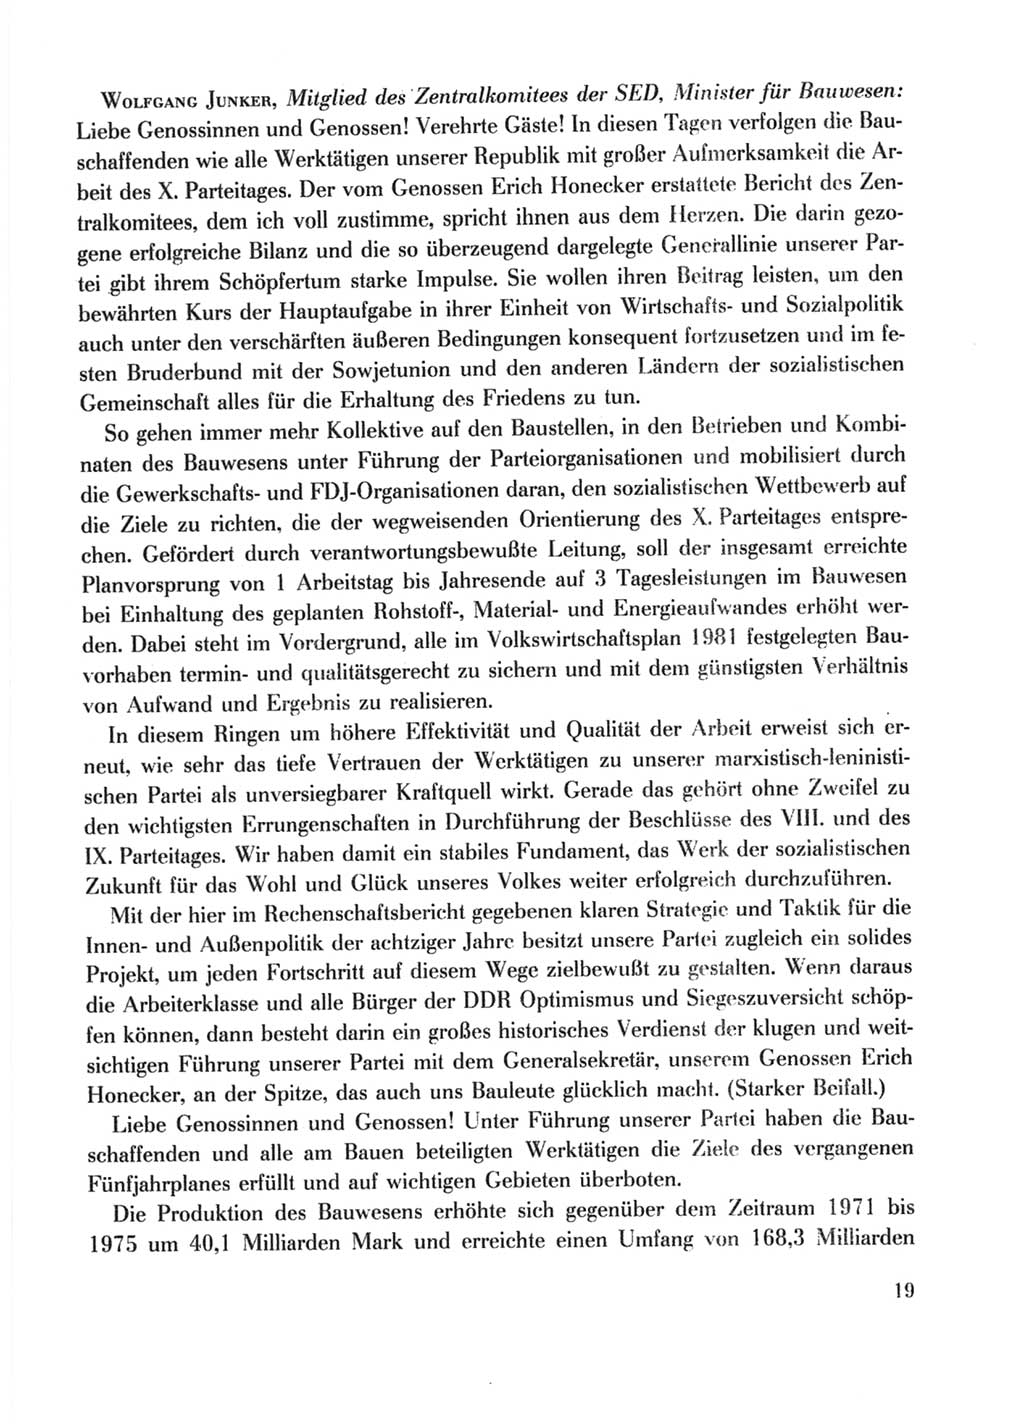 Protokoll der Verhandlungen des Ⅹ. Parteitages der Sozialistischen Einheitspartei Deutschlands (SED) [Deutsche Demokratische Republik (DDR)] 1981, Band 2, Seite 19 (Prot. Verh. Ⅹ. PT SED DDR 1981, Bd. 2, S. 19)